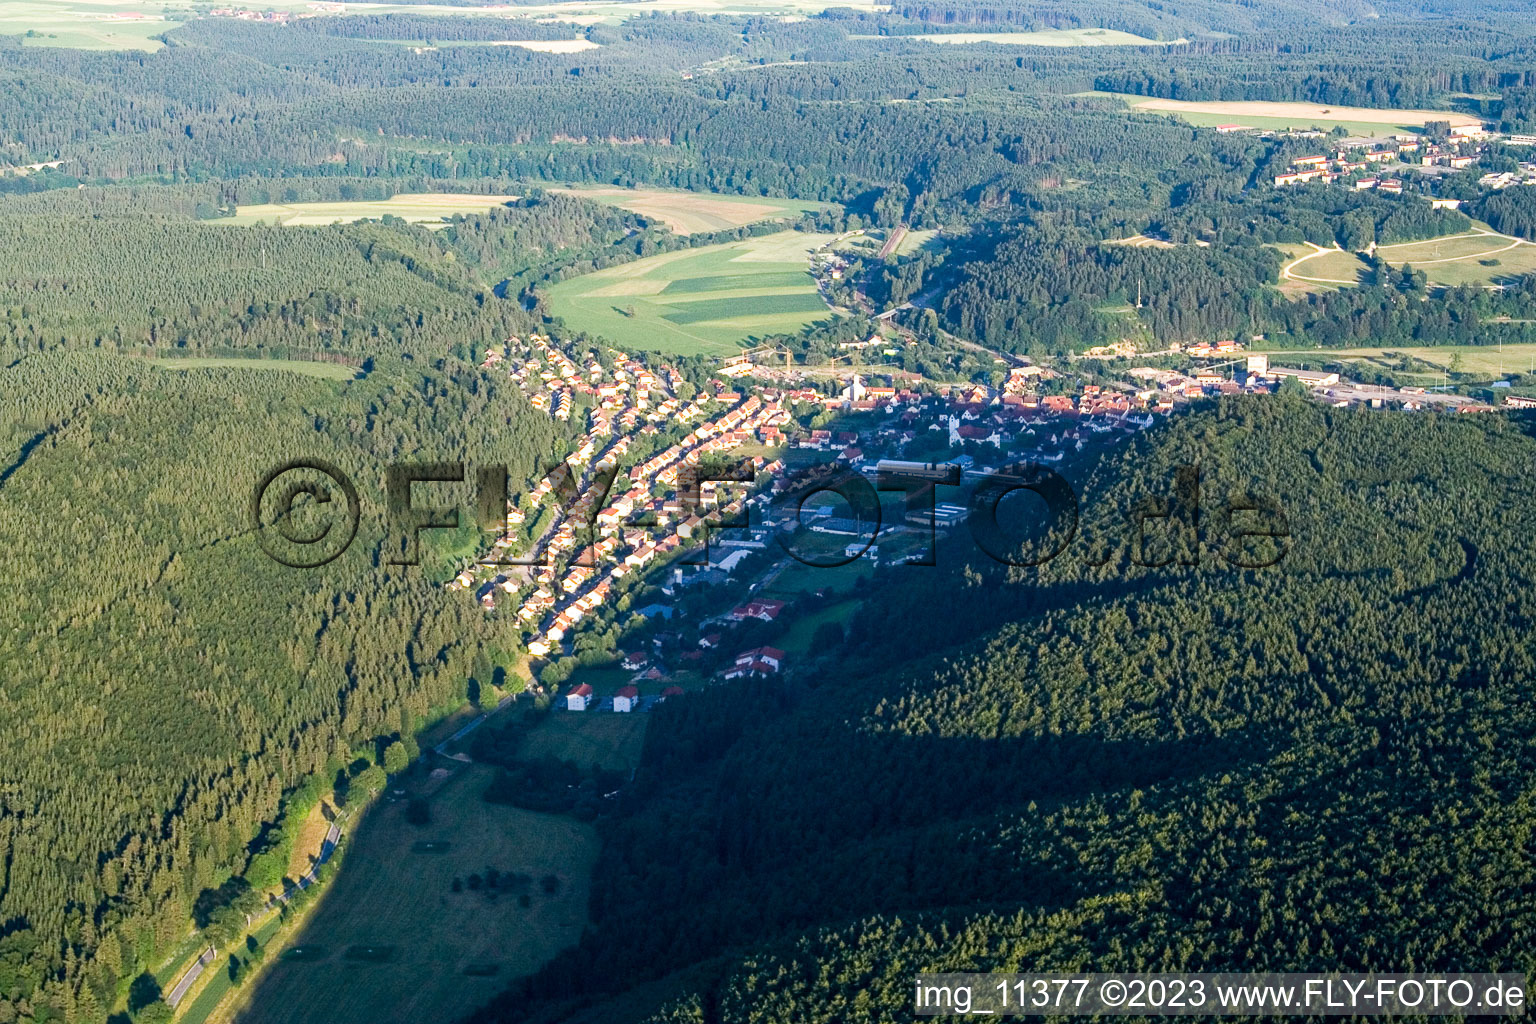 Immendingen im Bundesland Baden-Württemberg, Deutschland von der Drohne aus gesehen